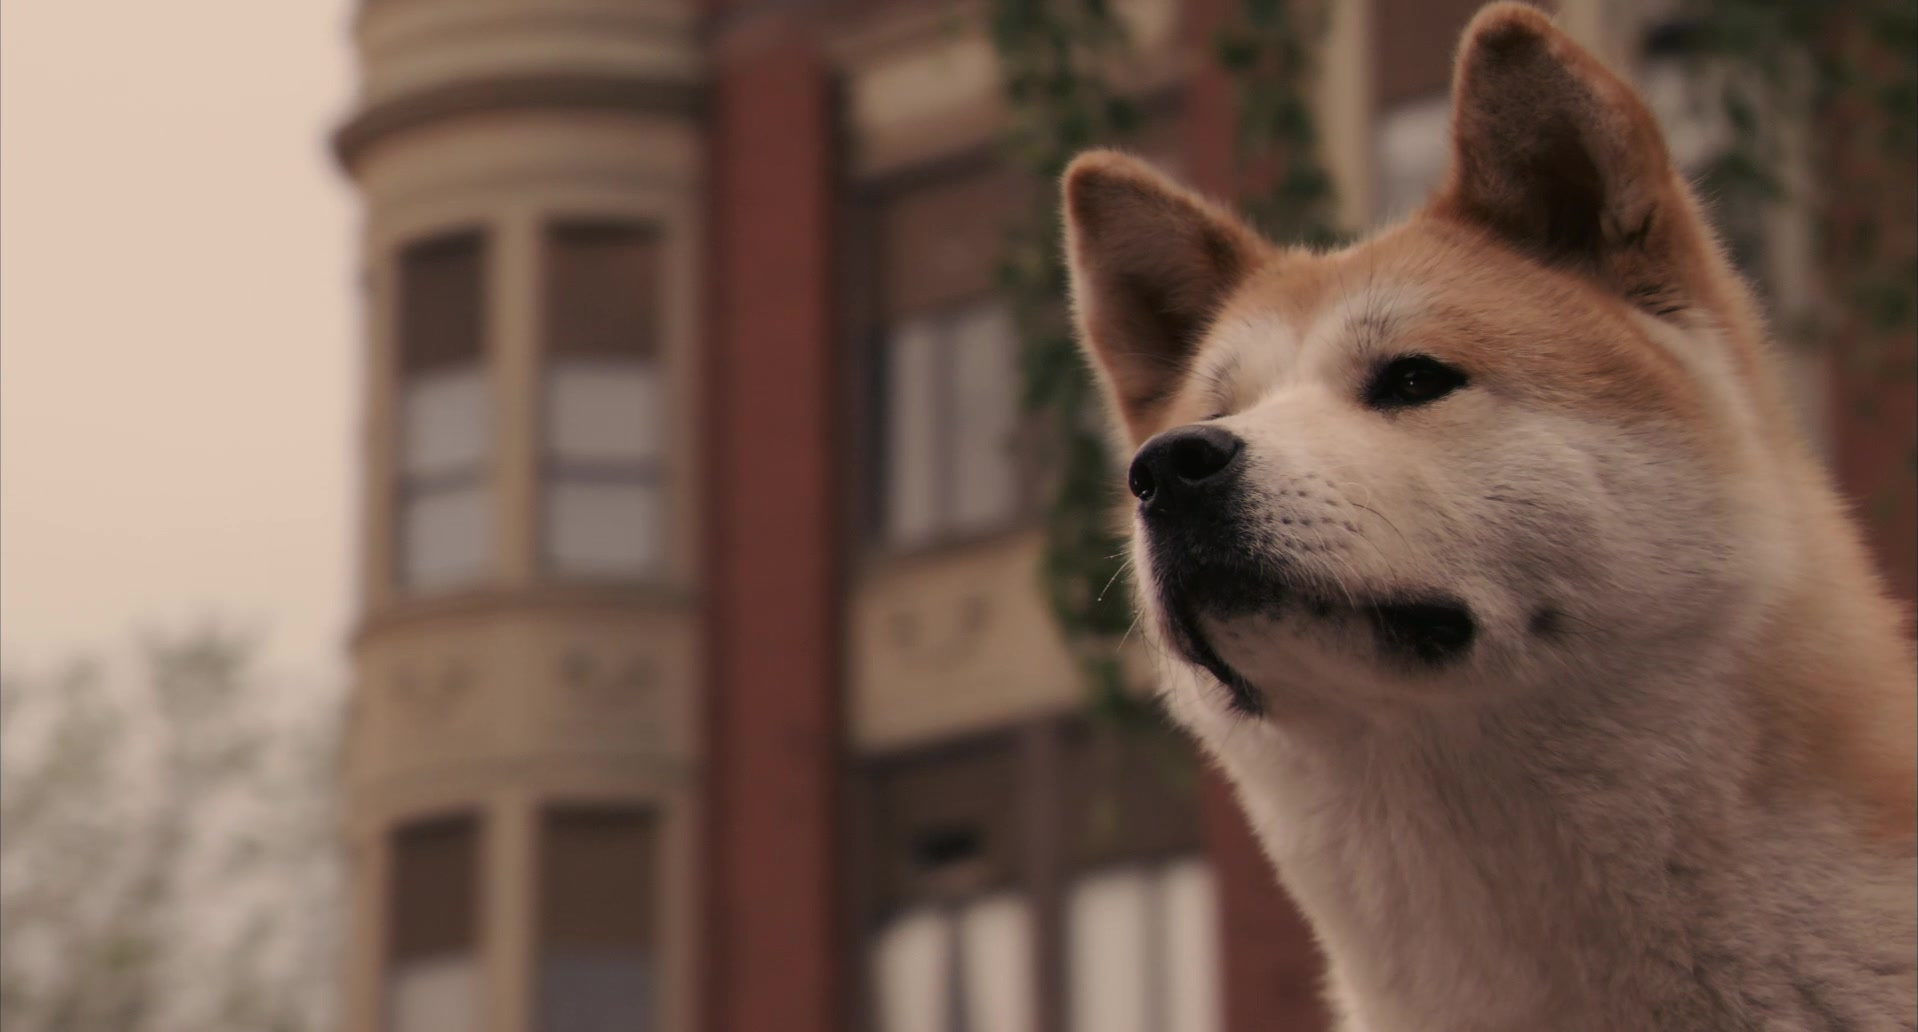 10 фильмов, посмотрев которые вы захотите завести собаку - Серия 0